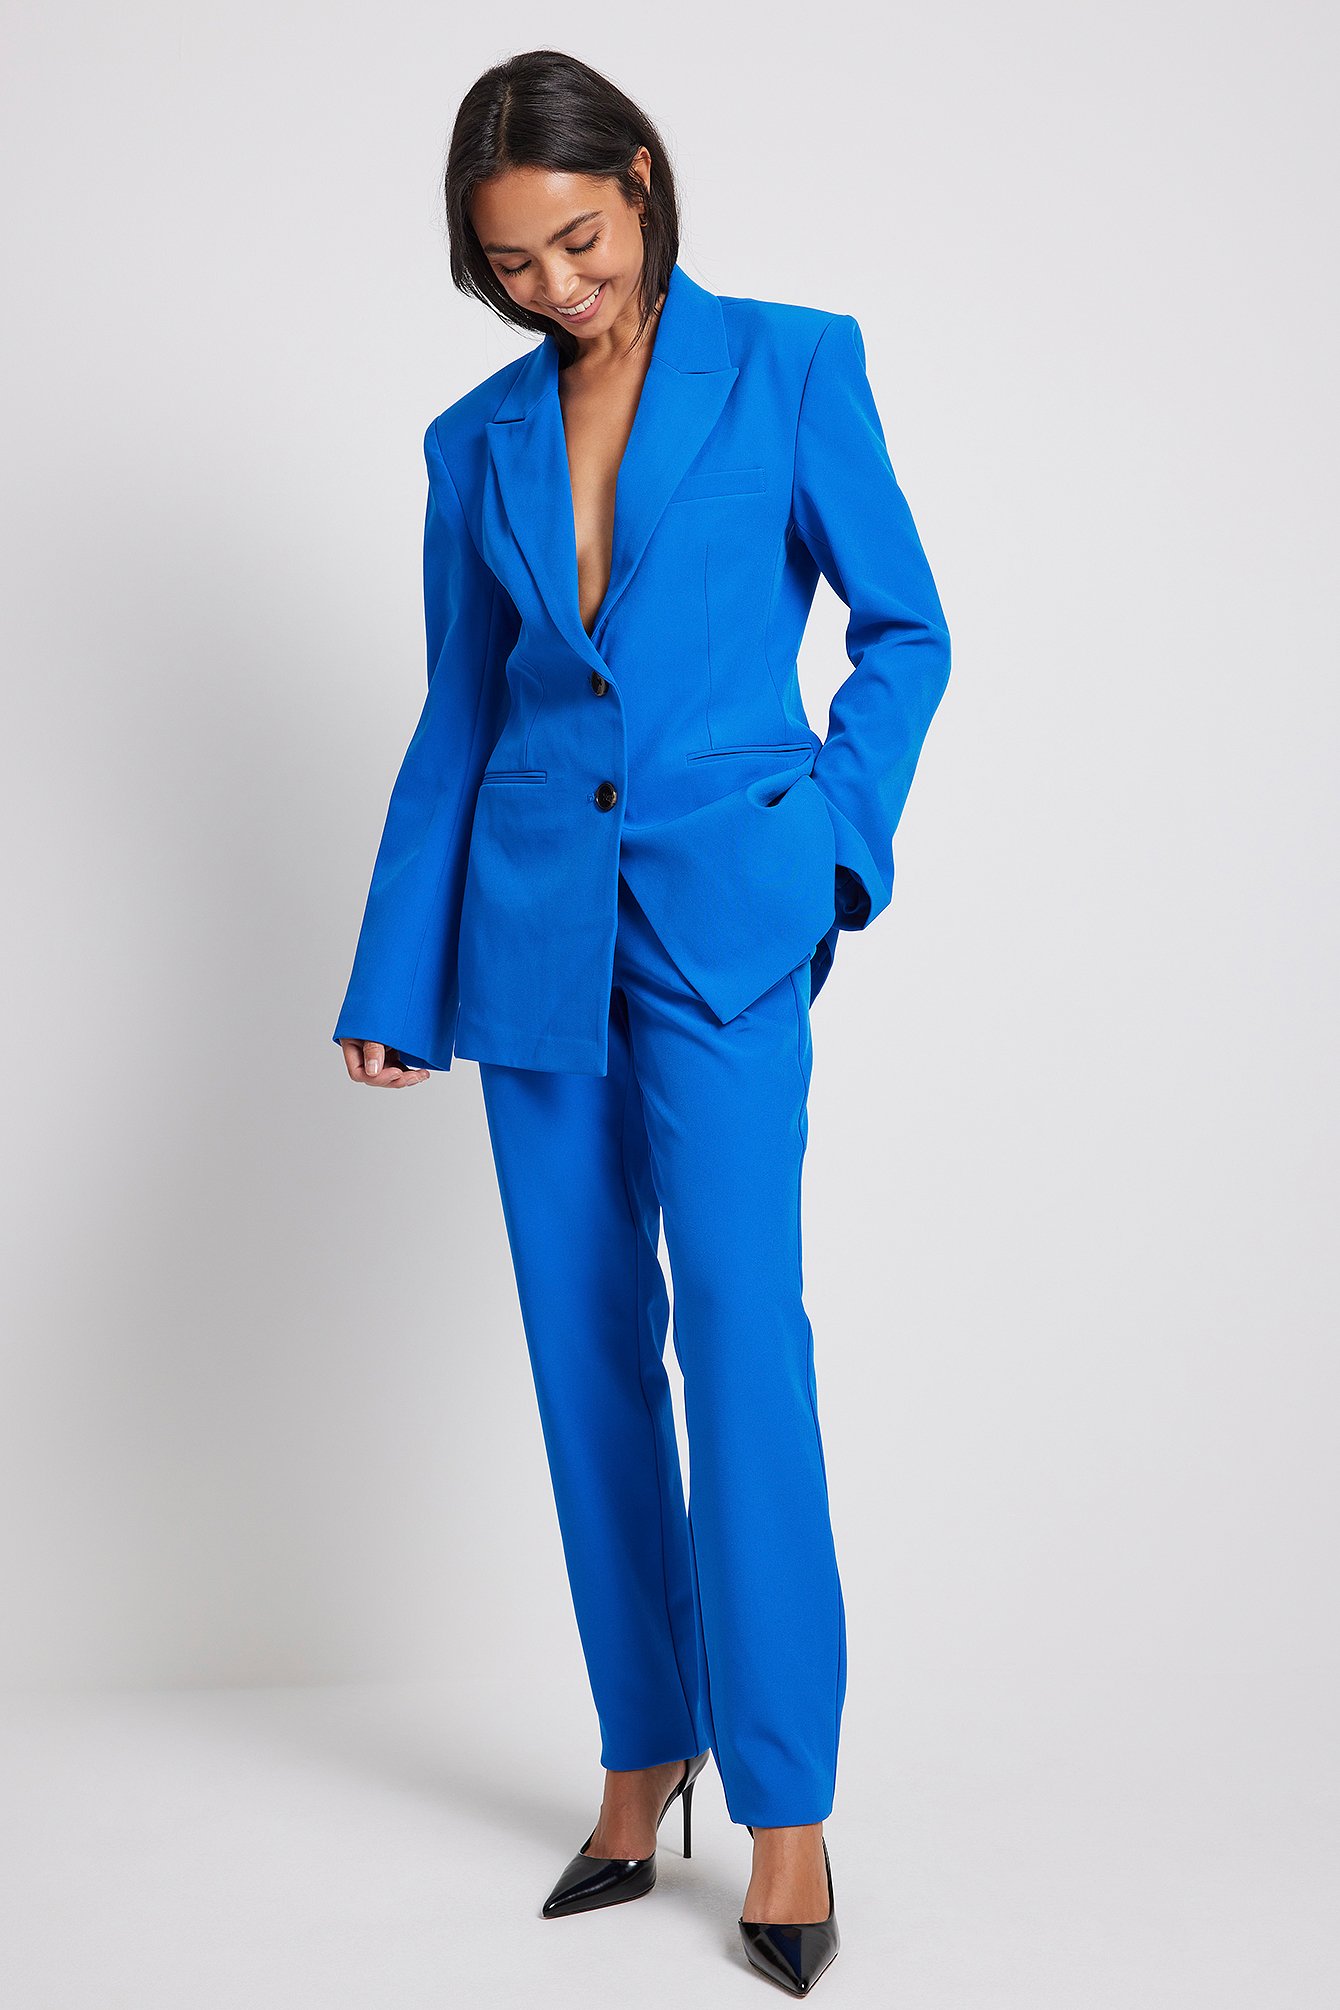 Damen Bekleidung Jacken Blazer Sakkos und Anzugsjacken NA-KD Synthetik Classic Spitz zulaufende Anzughose 